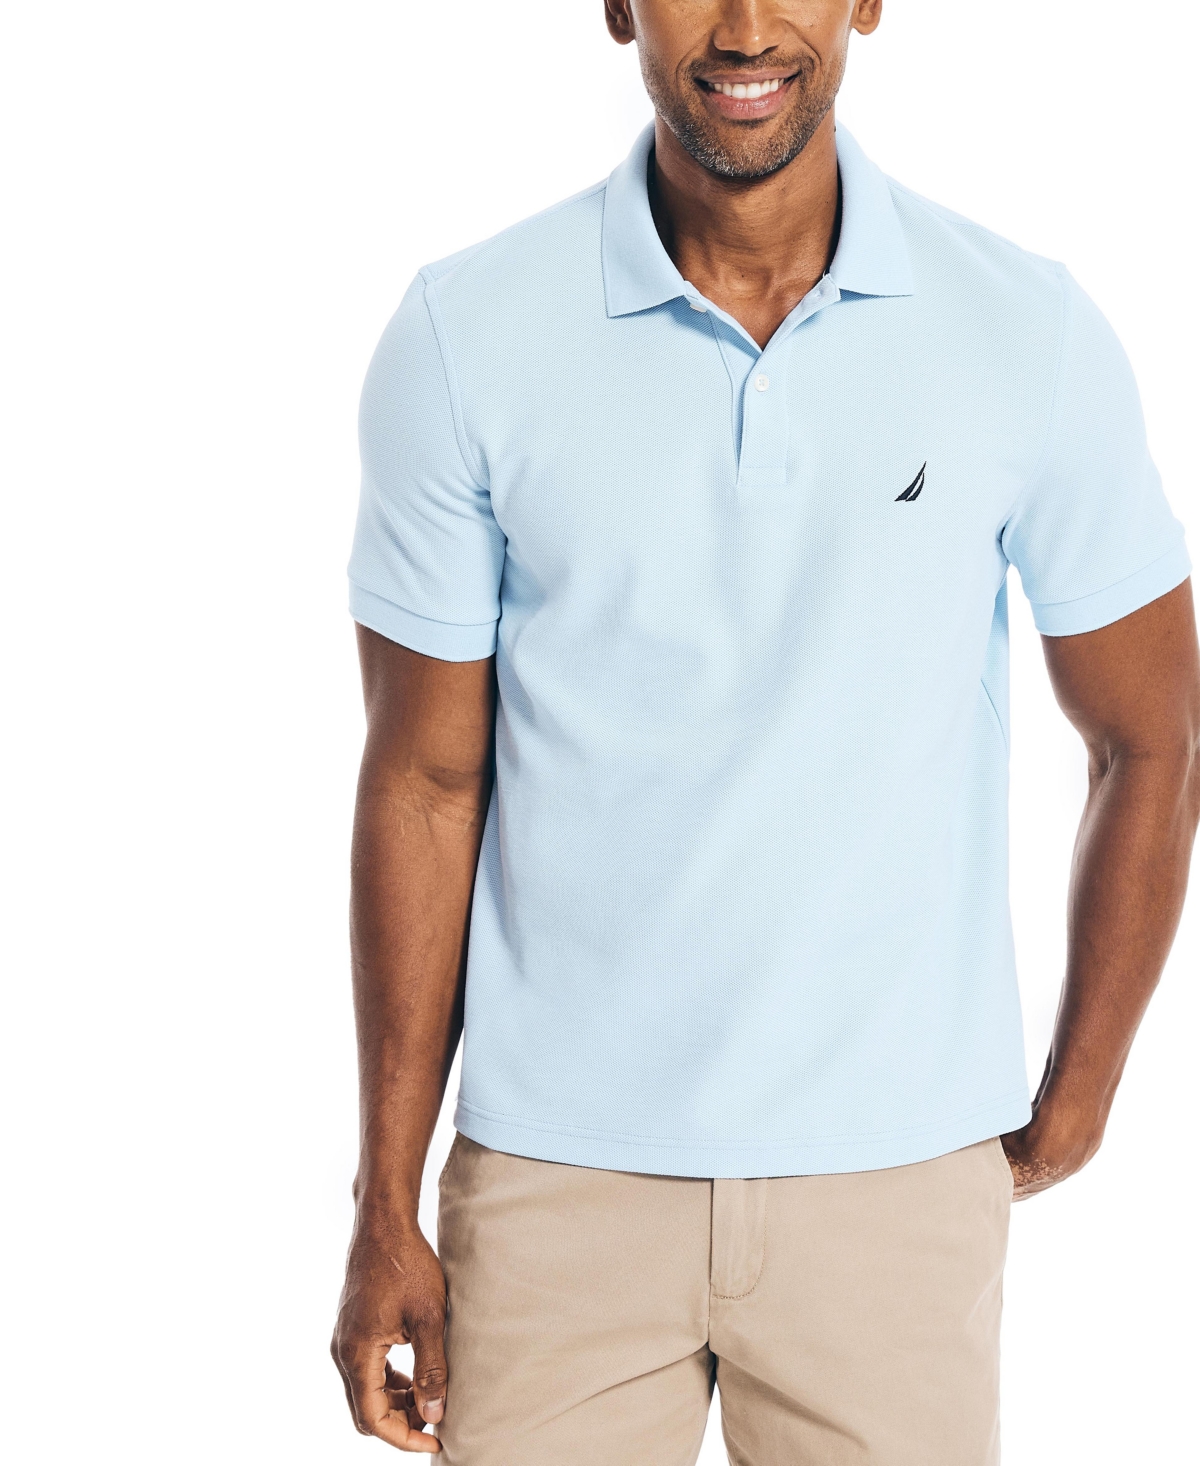 Mens NAUTICA Brand Linen Blend Short Sleeve Shirt Size L(s)